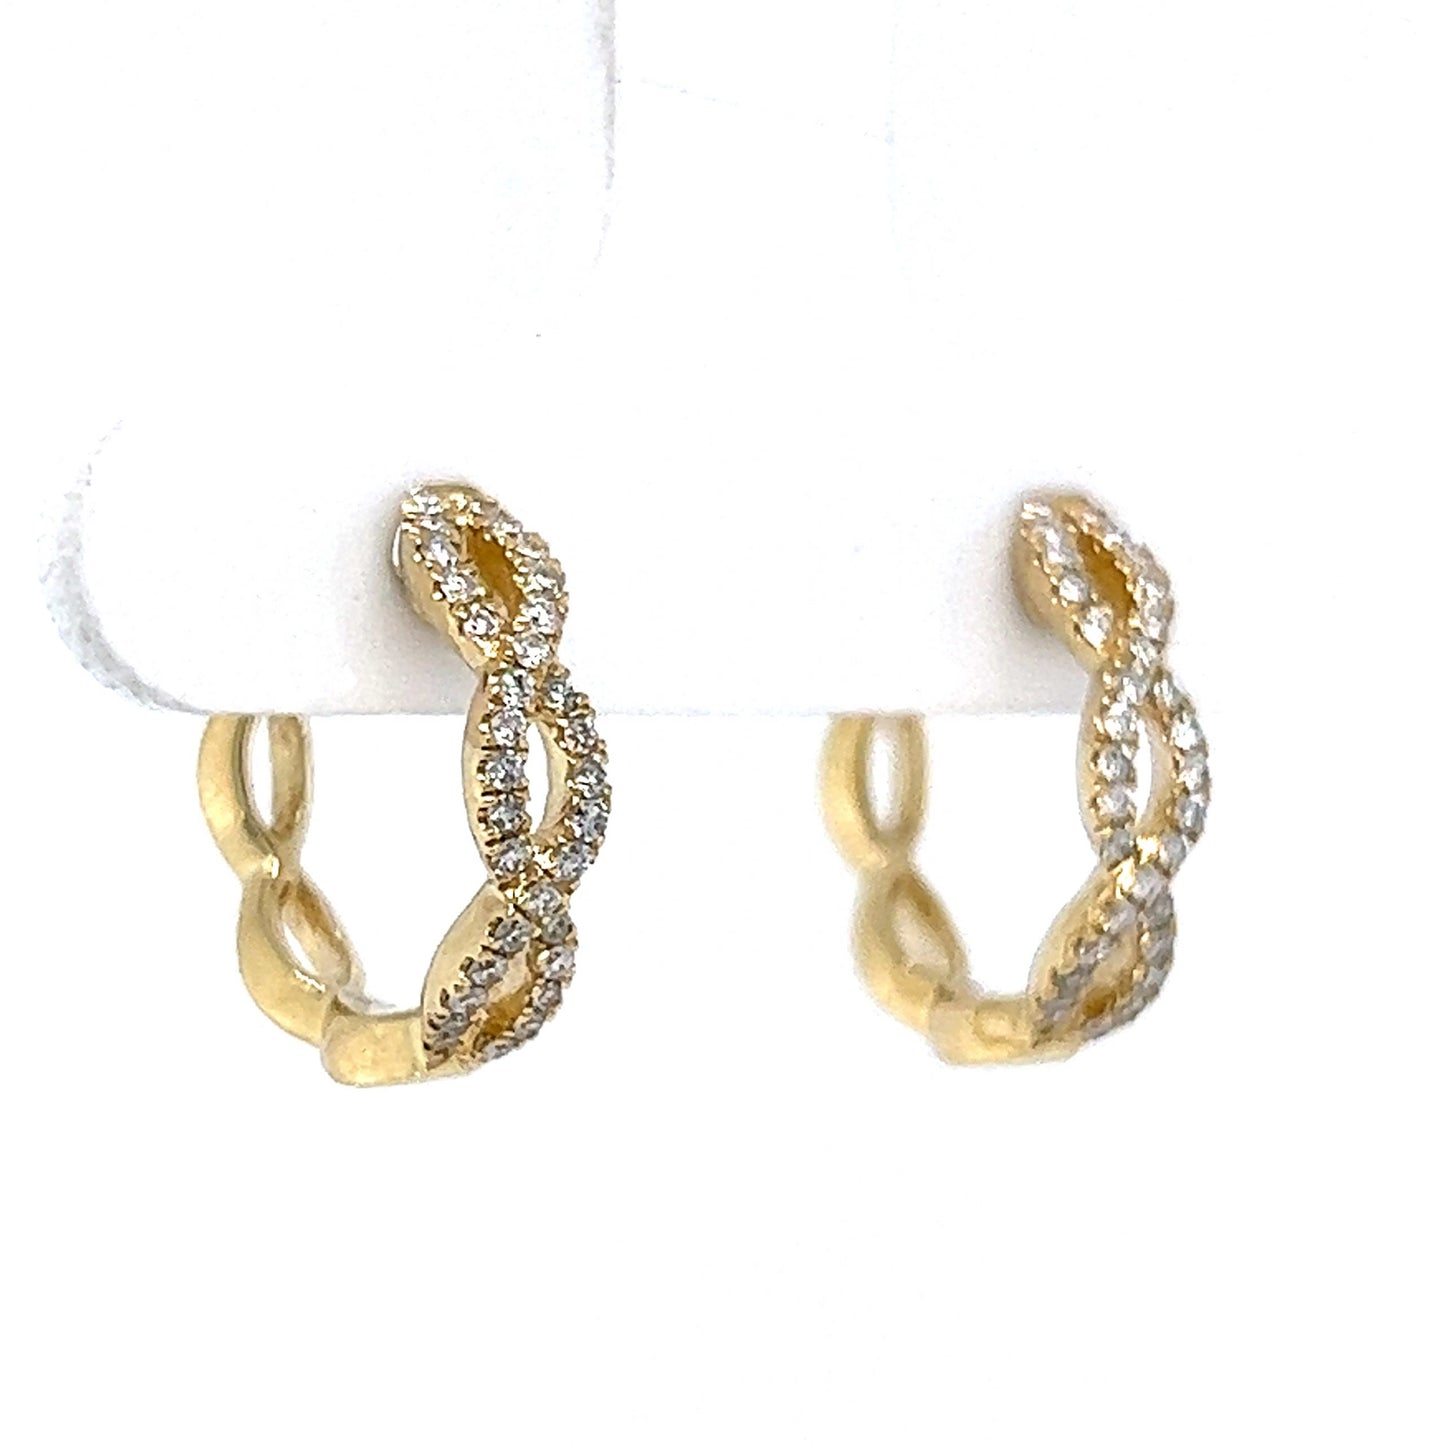 Pave Diamond Twist Hoop Earrings in 14k Yellow Gold